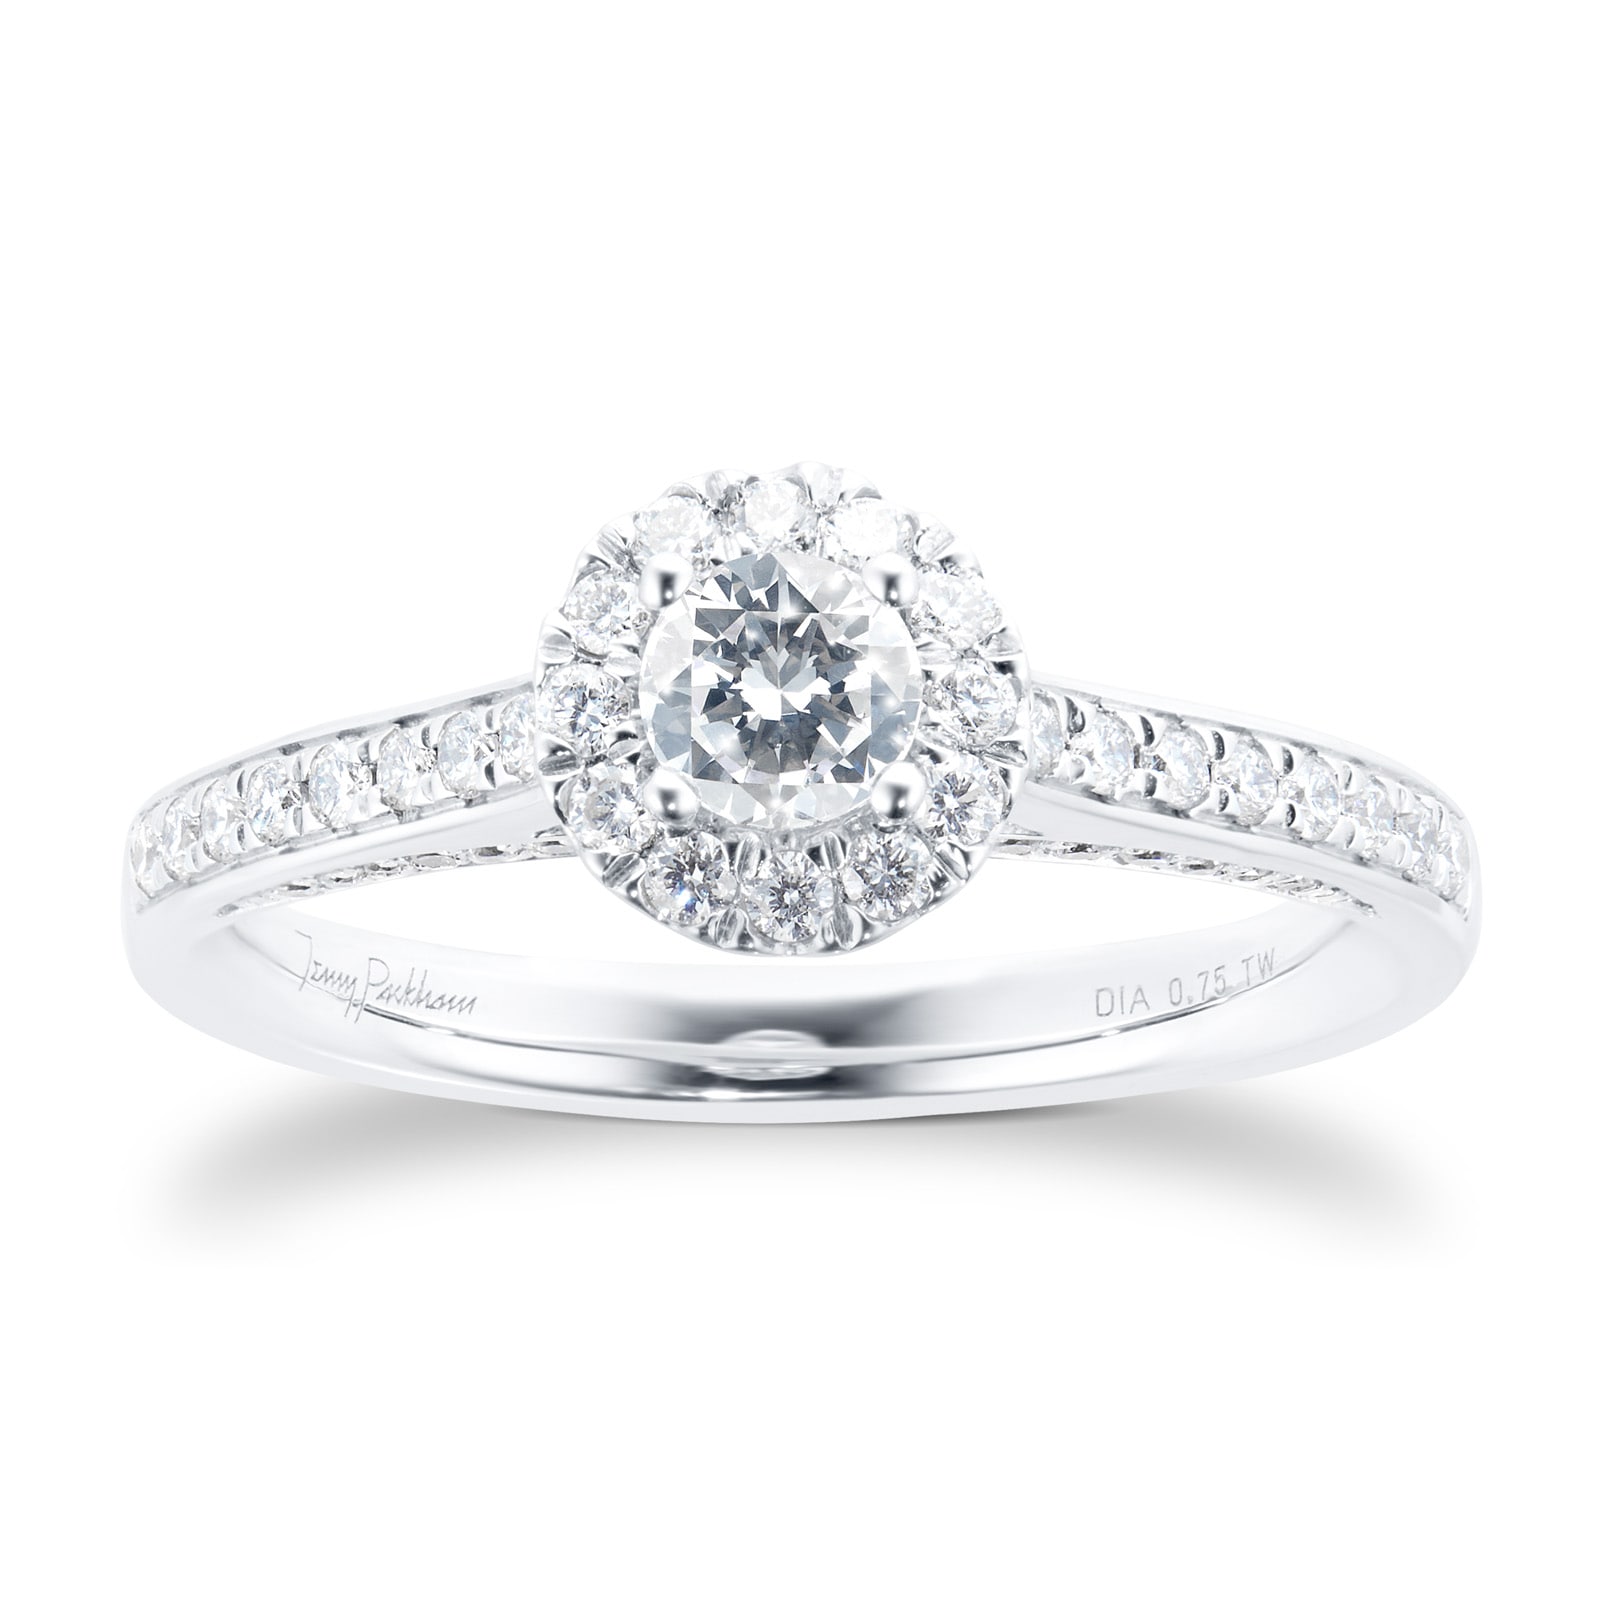 Platinum 0.75cttw Brilliant Cut Halo Diamond Ring - Ring Size M